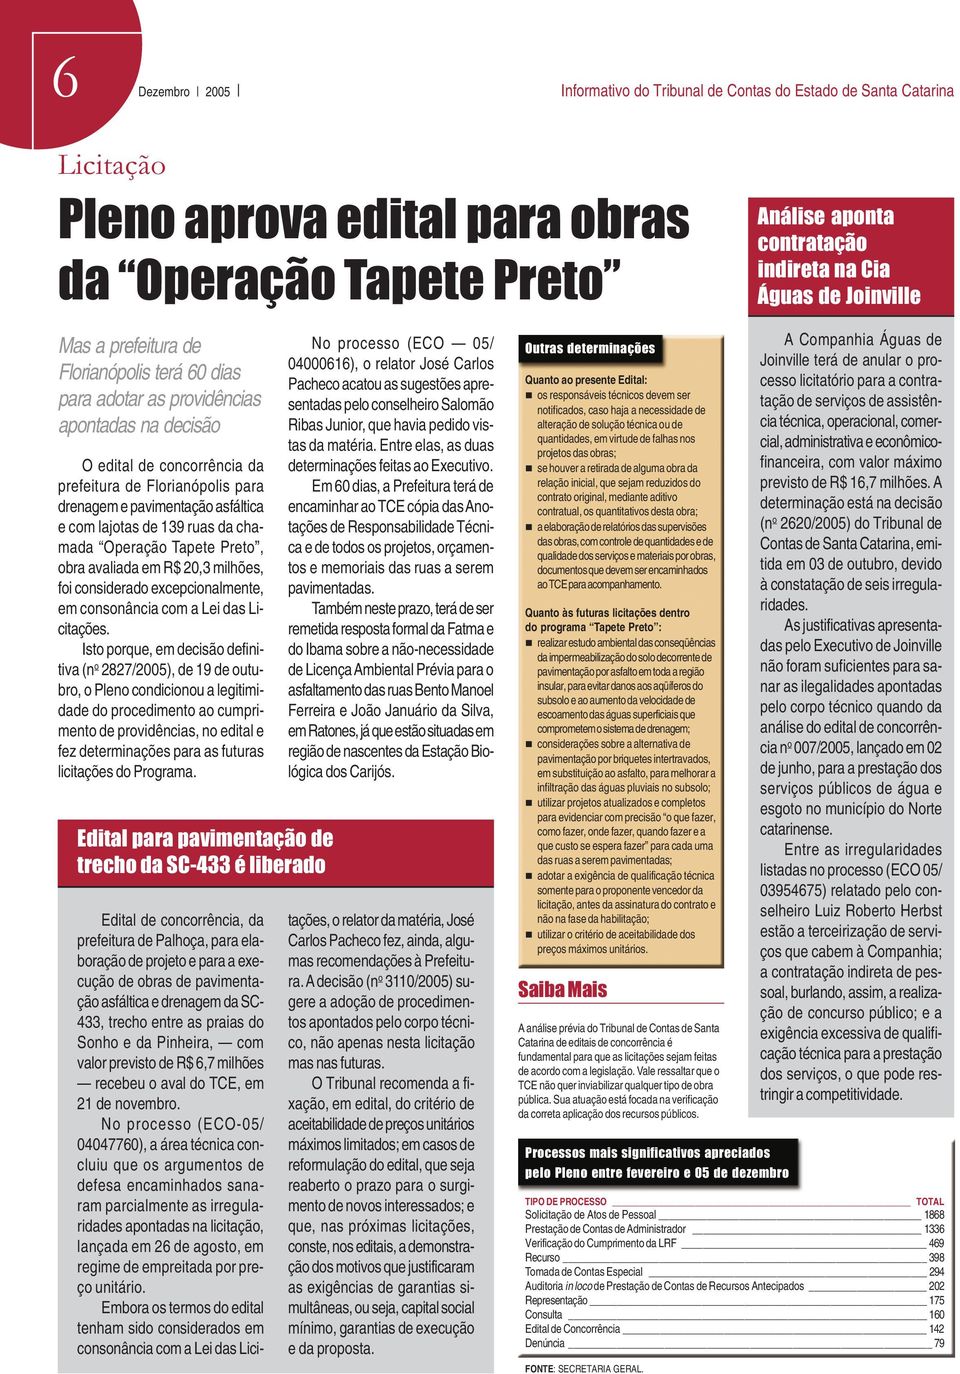 asfáltica e com lajotas de 139 ruas da chamada Operação Tapete Preto, obra avaliada em R$ 20,3 milhões, foi considerado excepcionalmente, em consonância com a Lei das Licitações.